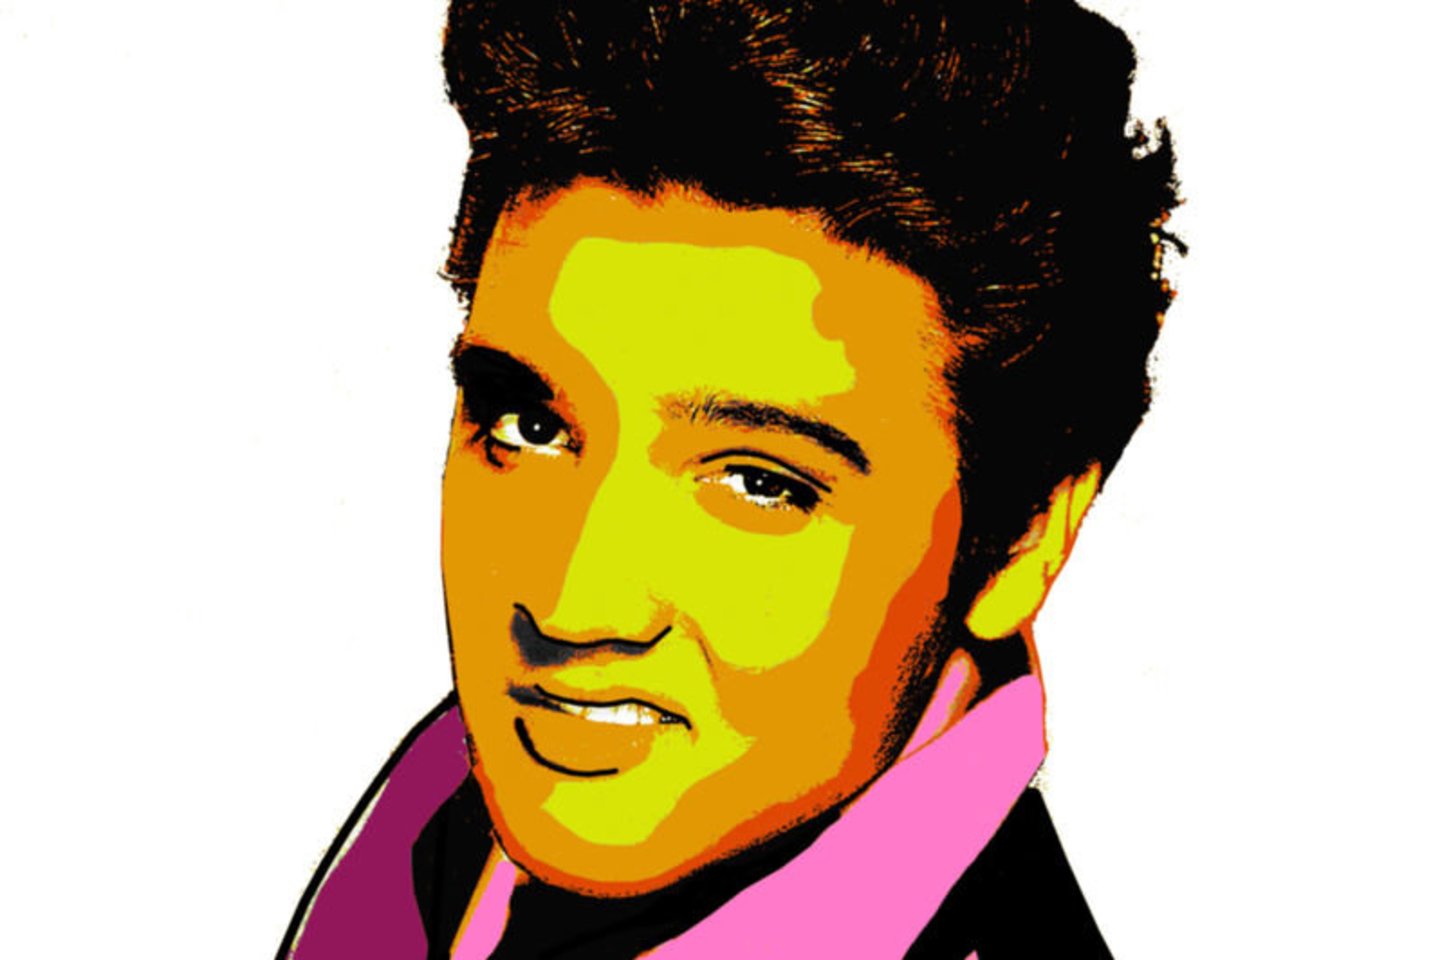 1935 m. gimė amerikiečių popdainininkas ir kino aktorius, vadinamas rokenrolo karaliumi, Elvis Presley. Mirė 1977 m.<br>123rf